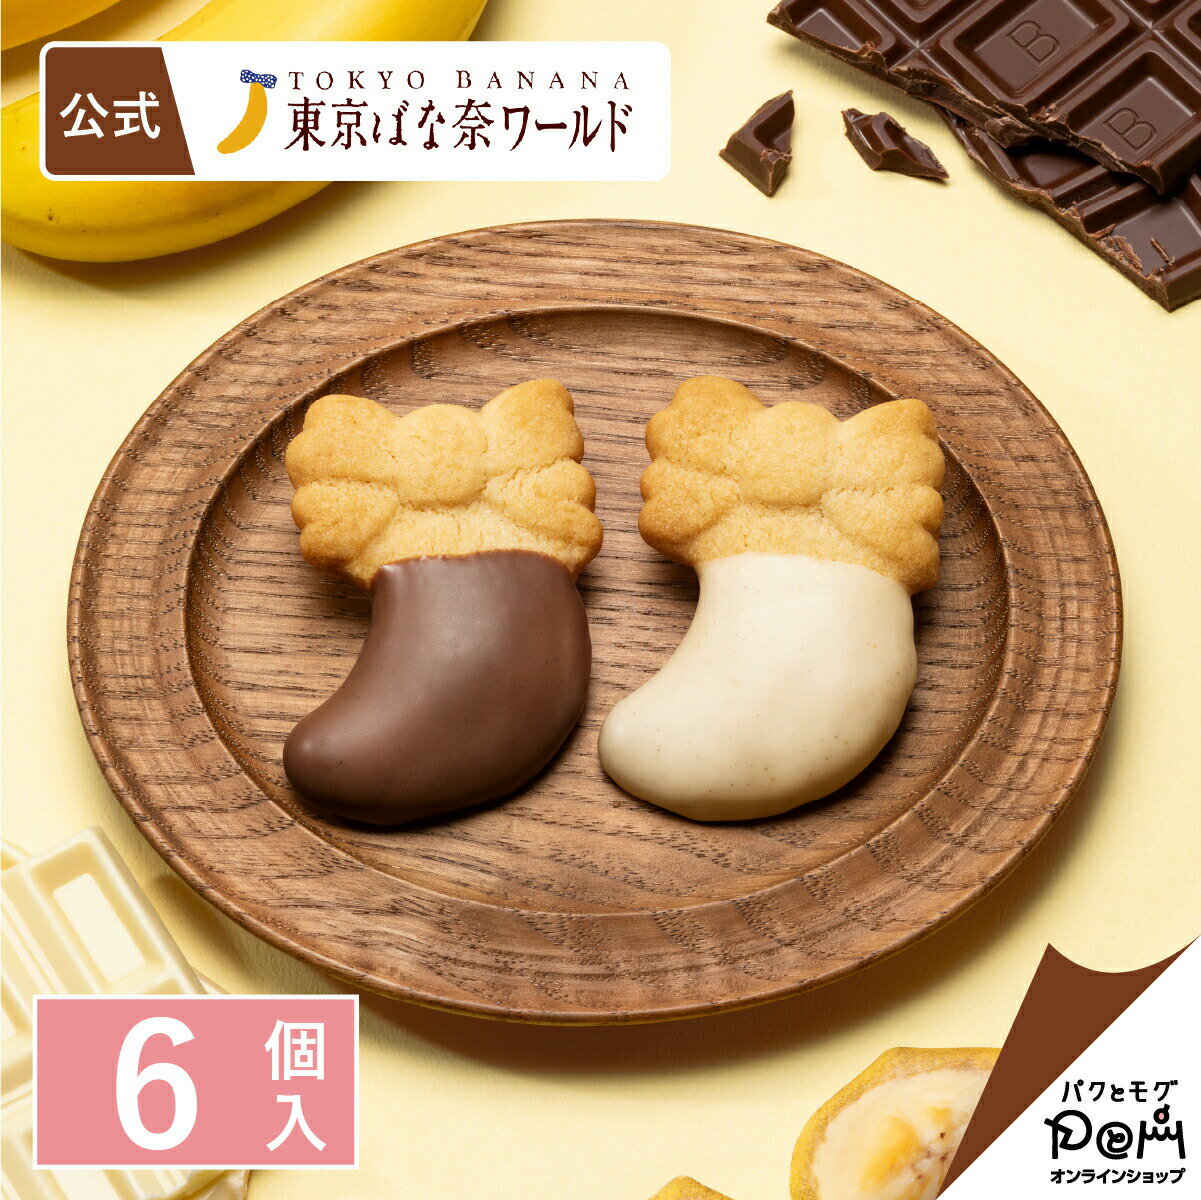 東京芭娜娜的巧克力香蕉餅乾 6個入(130g) ❘ 餅乾 ❘ 甜點 ❘ 菓子 ❘ 獨立包裝 ❘ 日本必買 (日本食品滿1800免運)